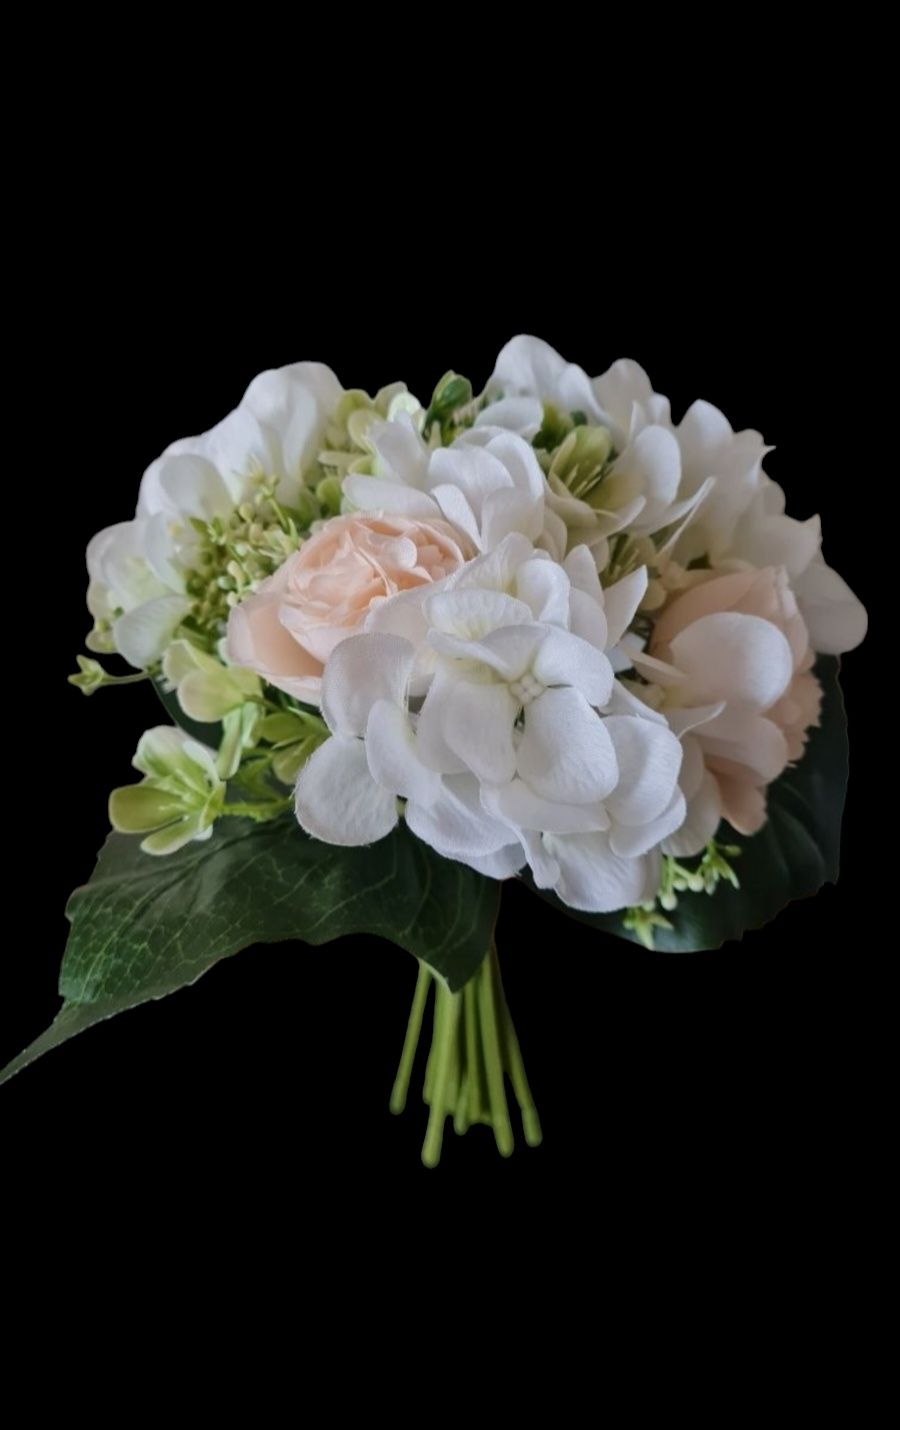 Kik bukiet kwiaty hortensja biały 14 gałązek NOWY